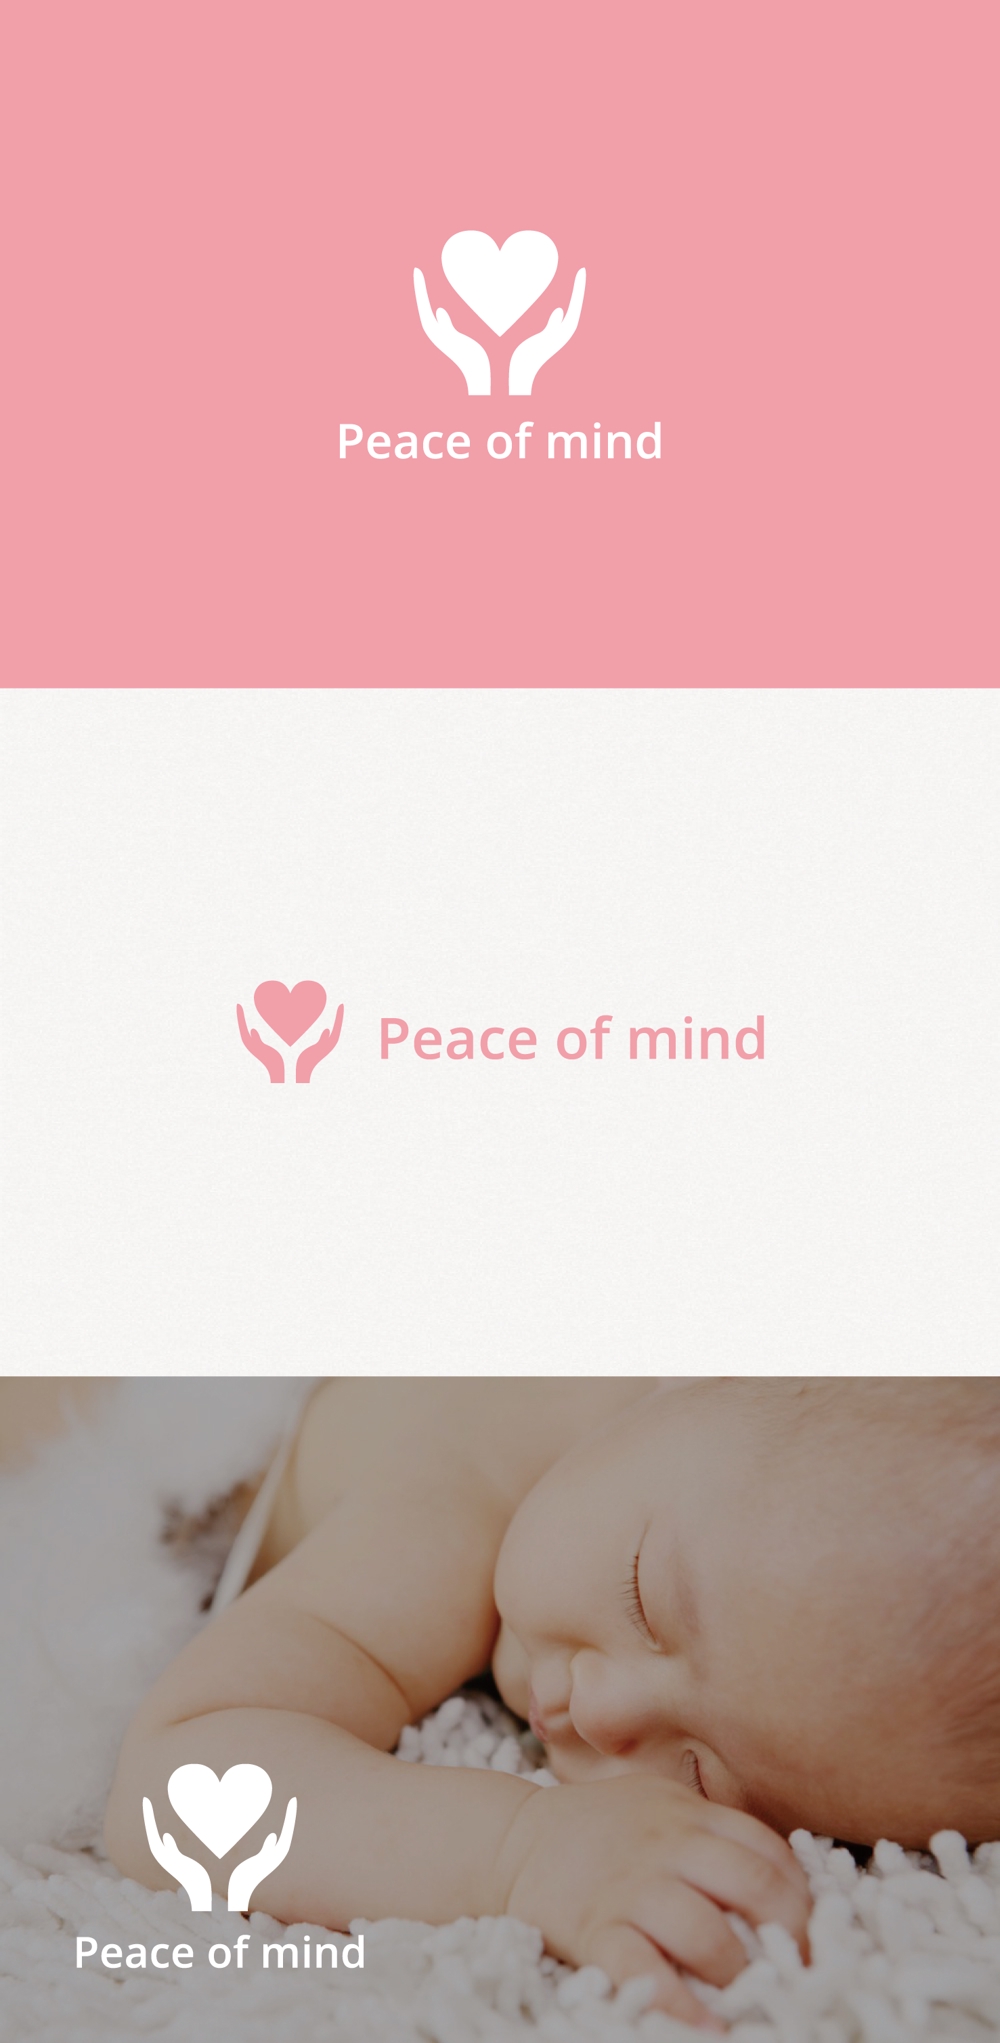 子育て支援事業「Peace of mind」のロゴ